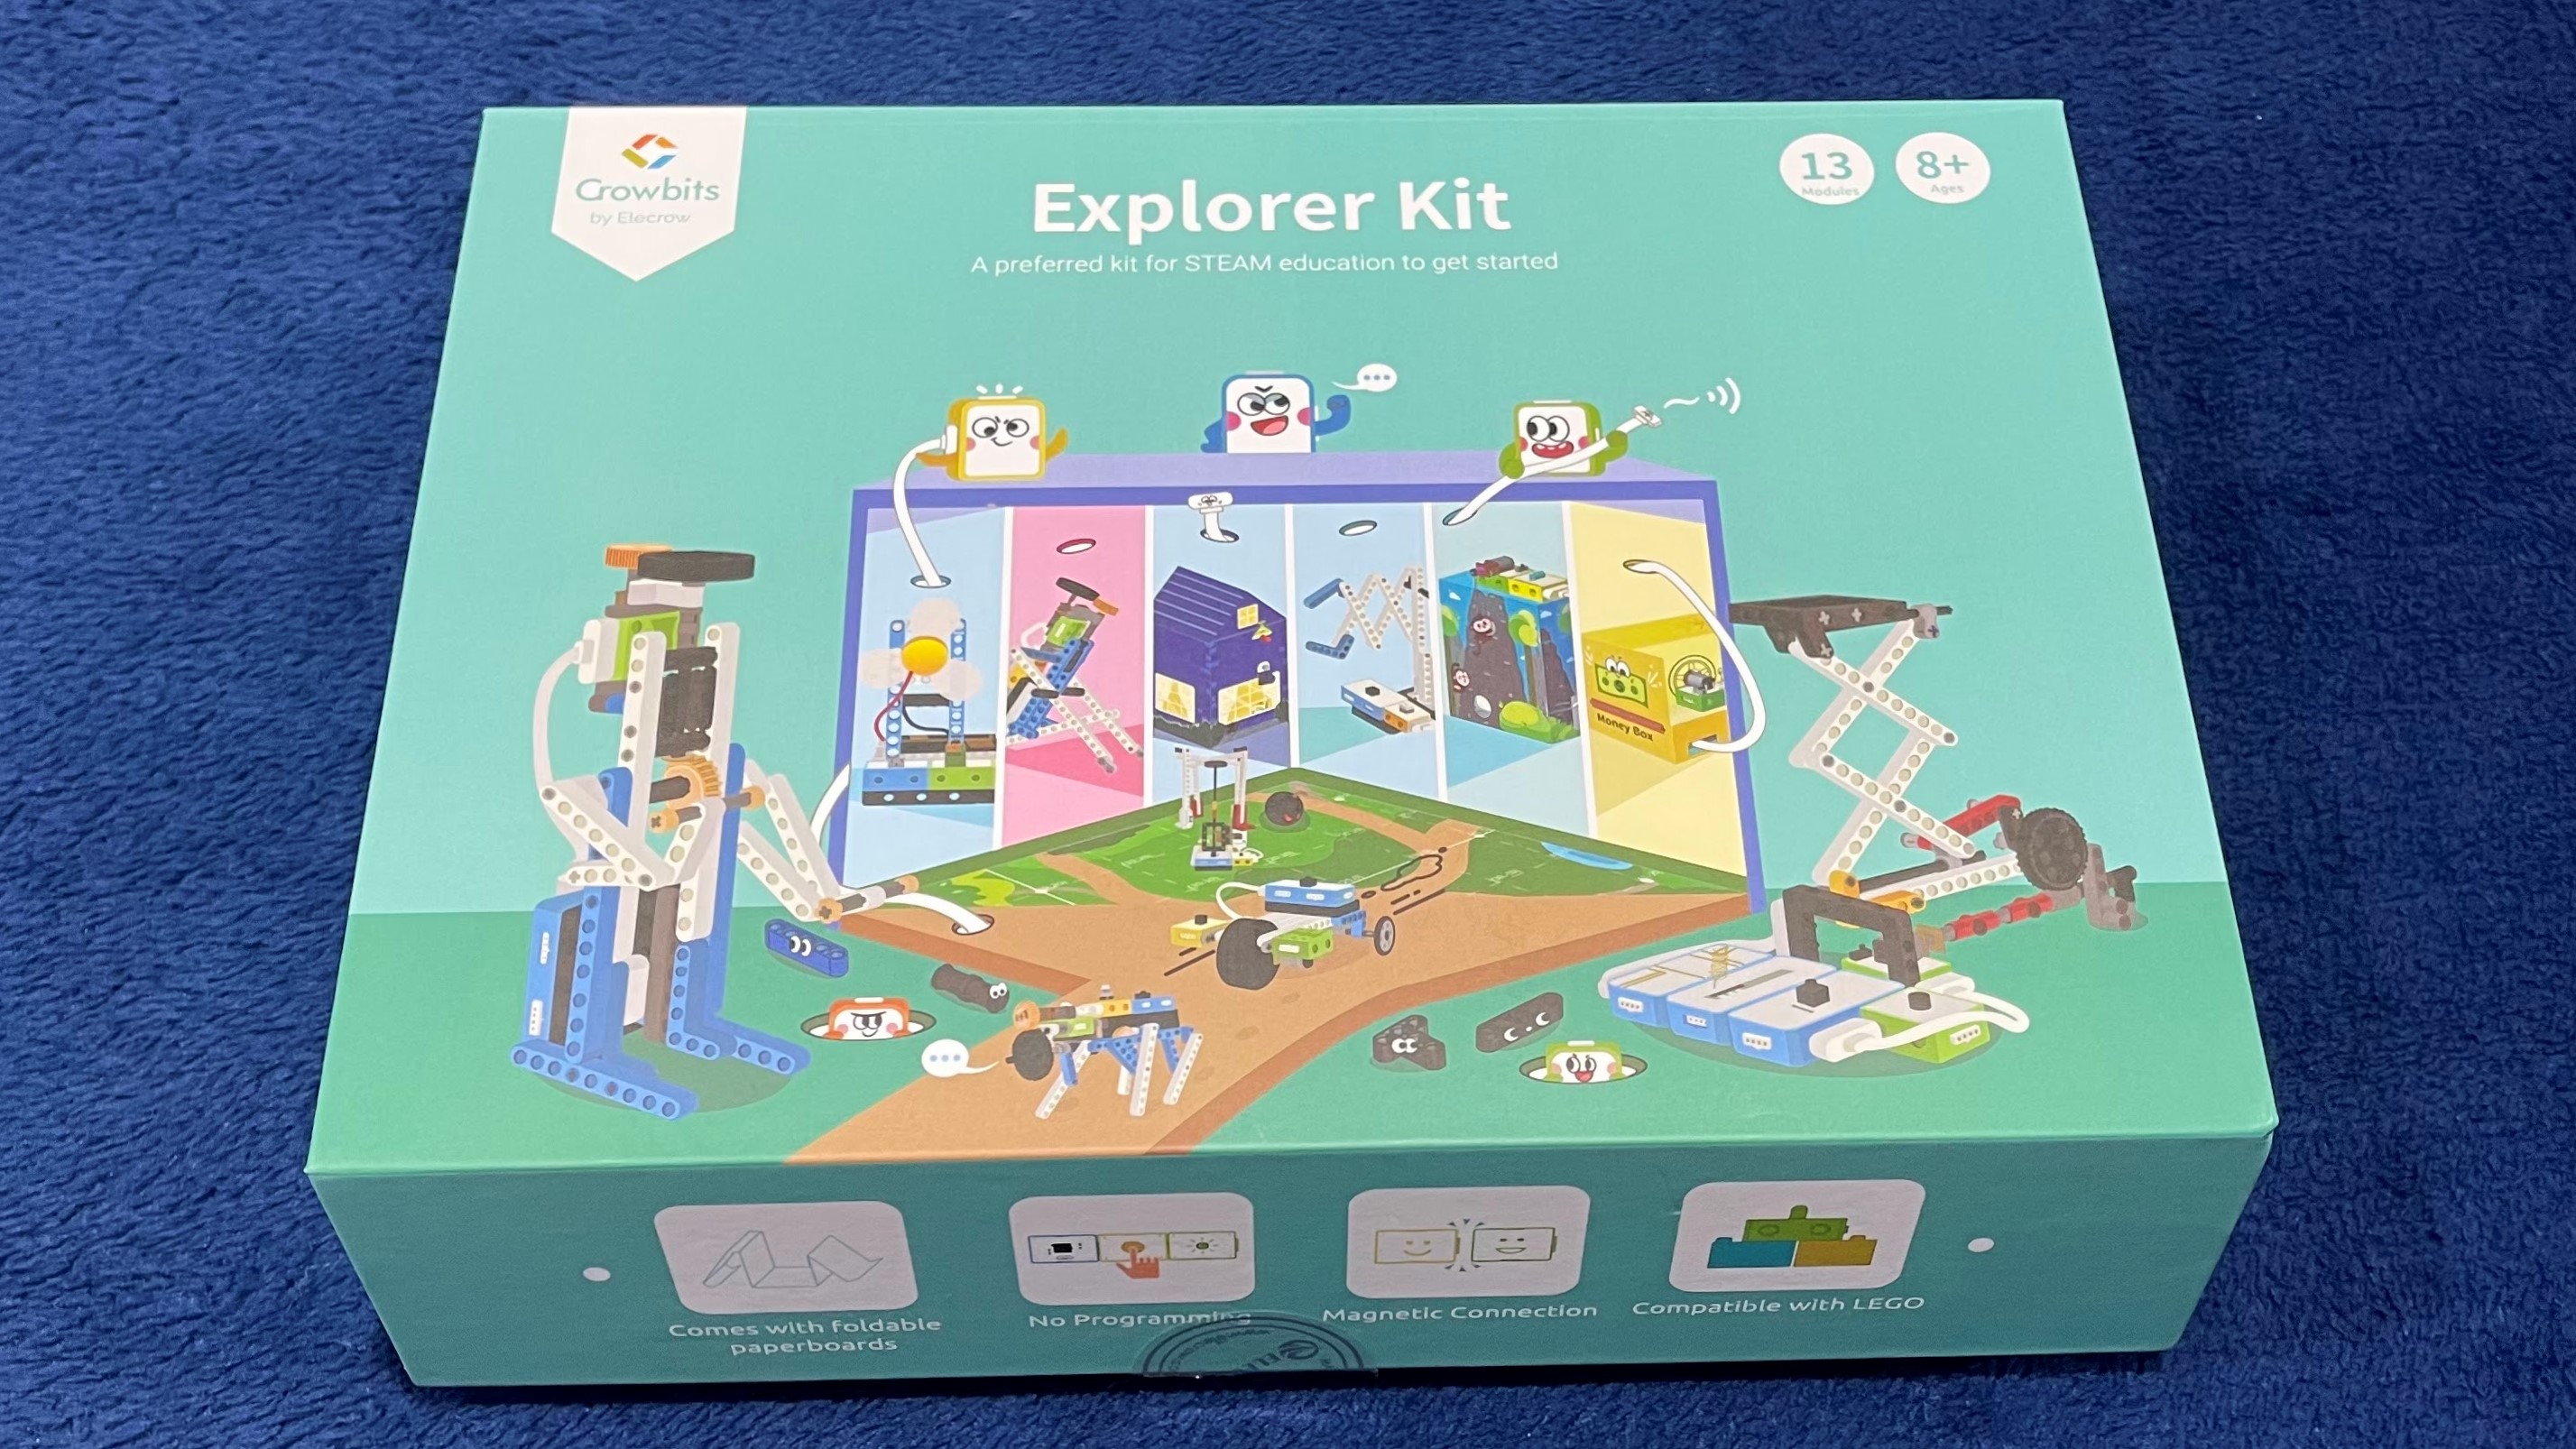 Hello Kit and Explorer Kit